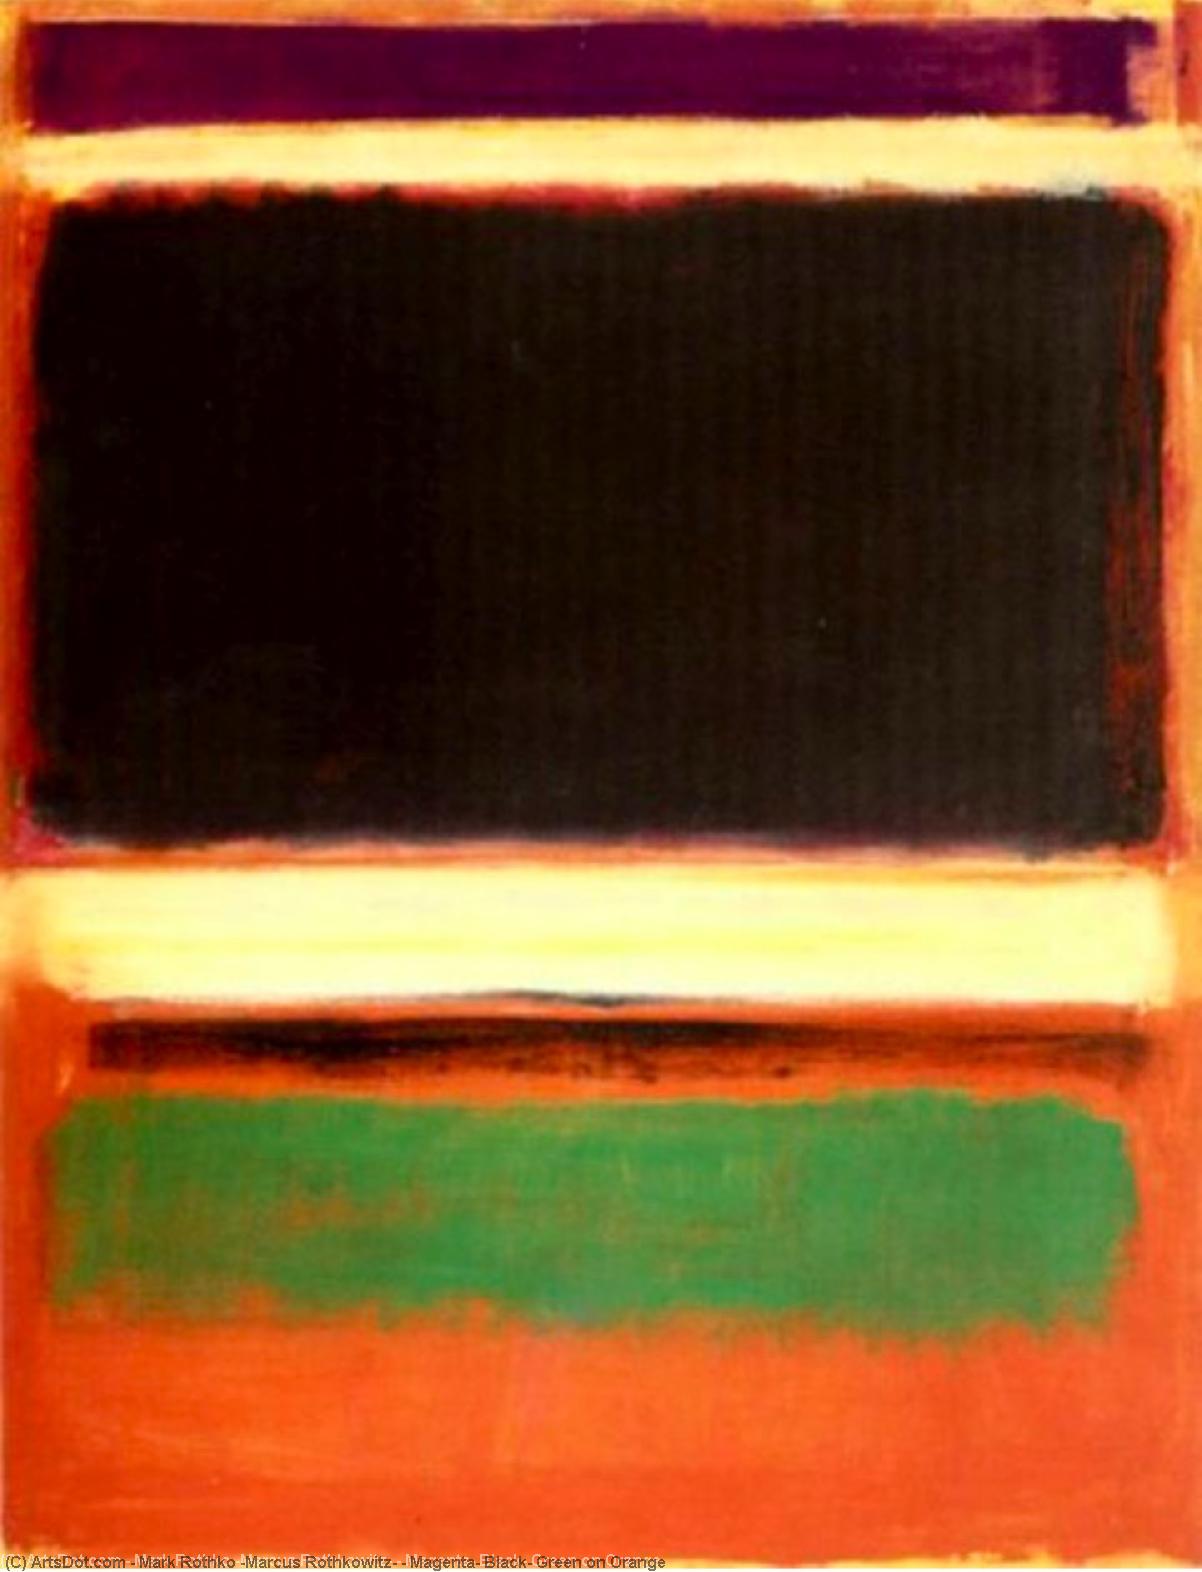 Wikioo.org - Bách khoa toàn thư về mỹ thuật - Vẽ tranh, Tác phẩm nghệ thuật Mark Rothko (Marcus Rothkowitz) - Magenta, Black, Green on Orange